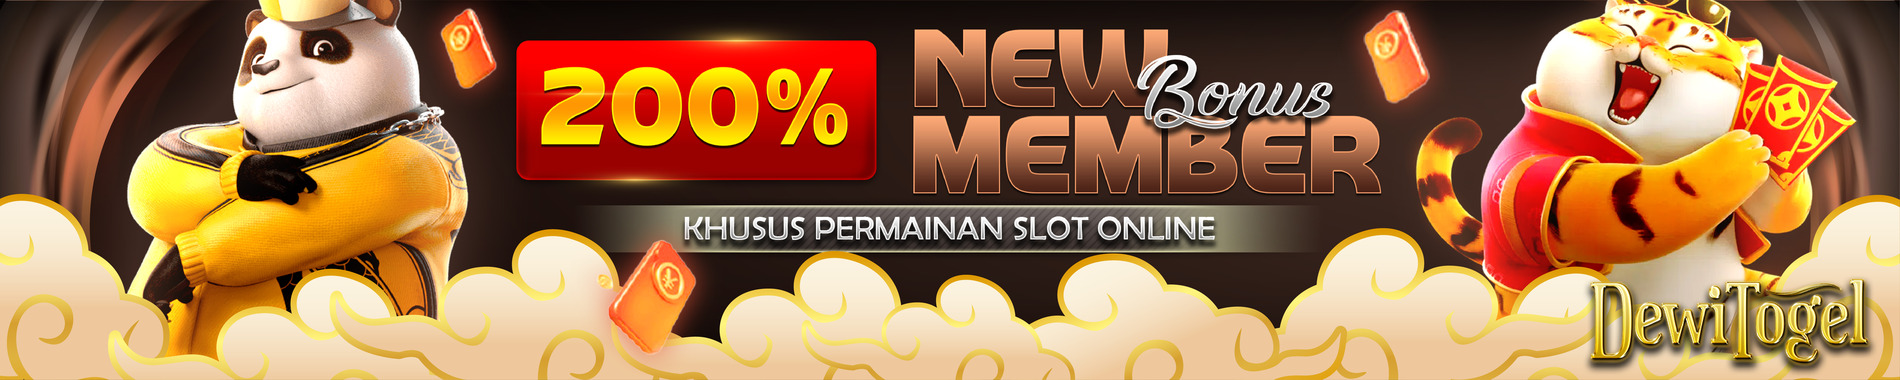 Bonus slot new member 200% dewitogel